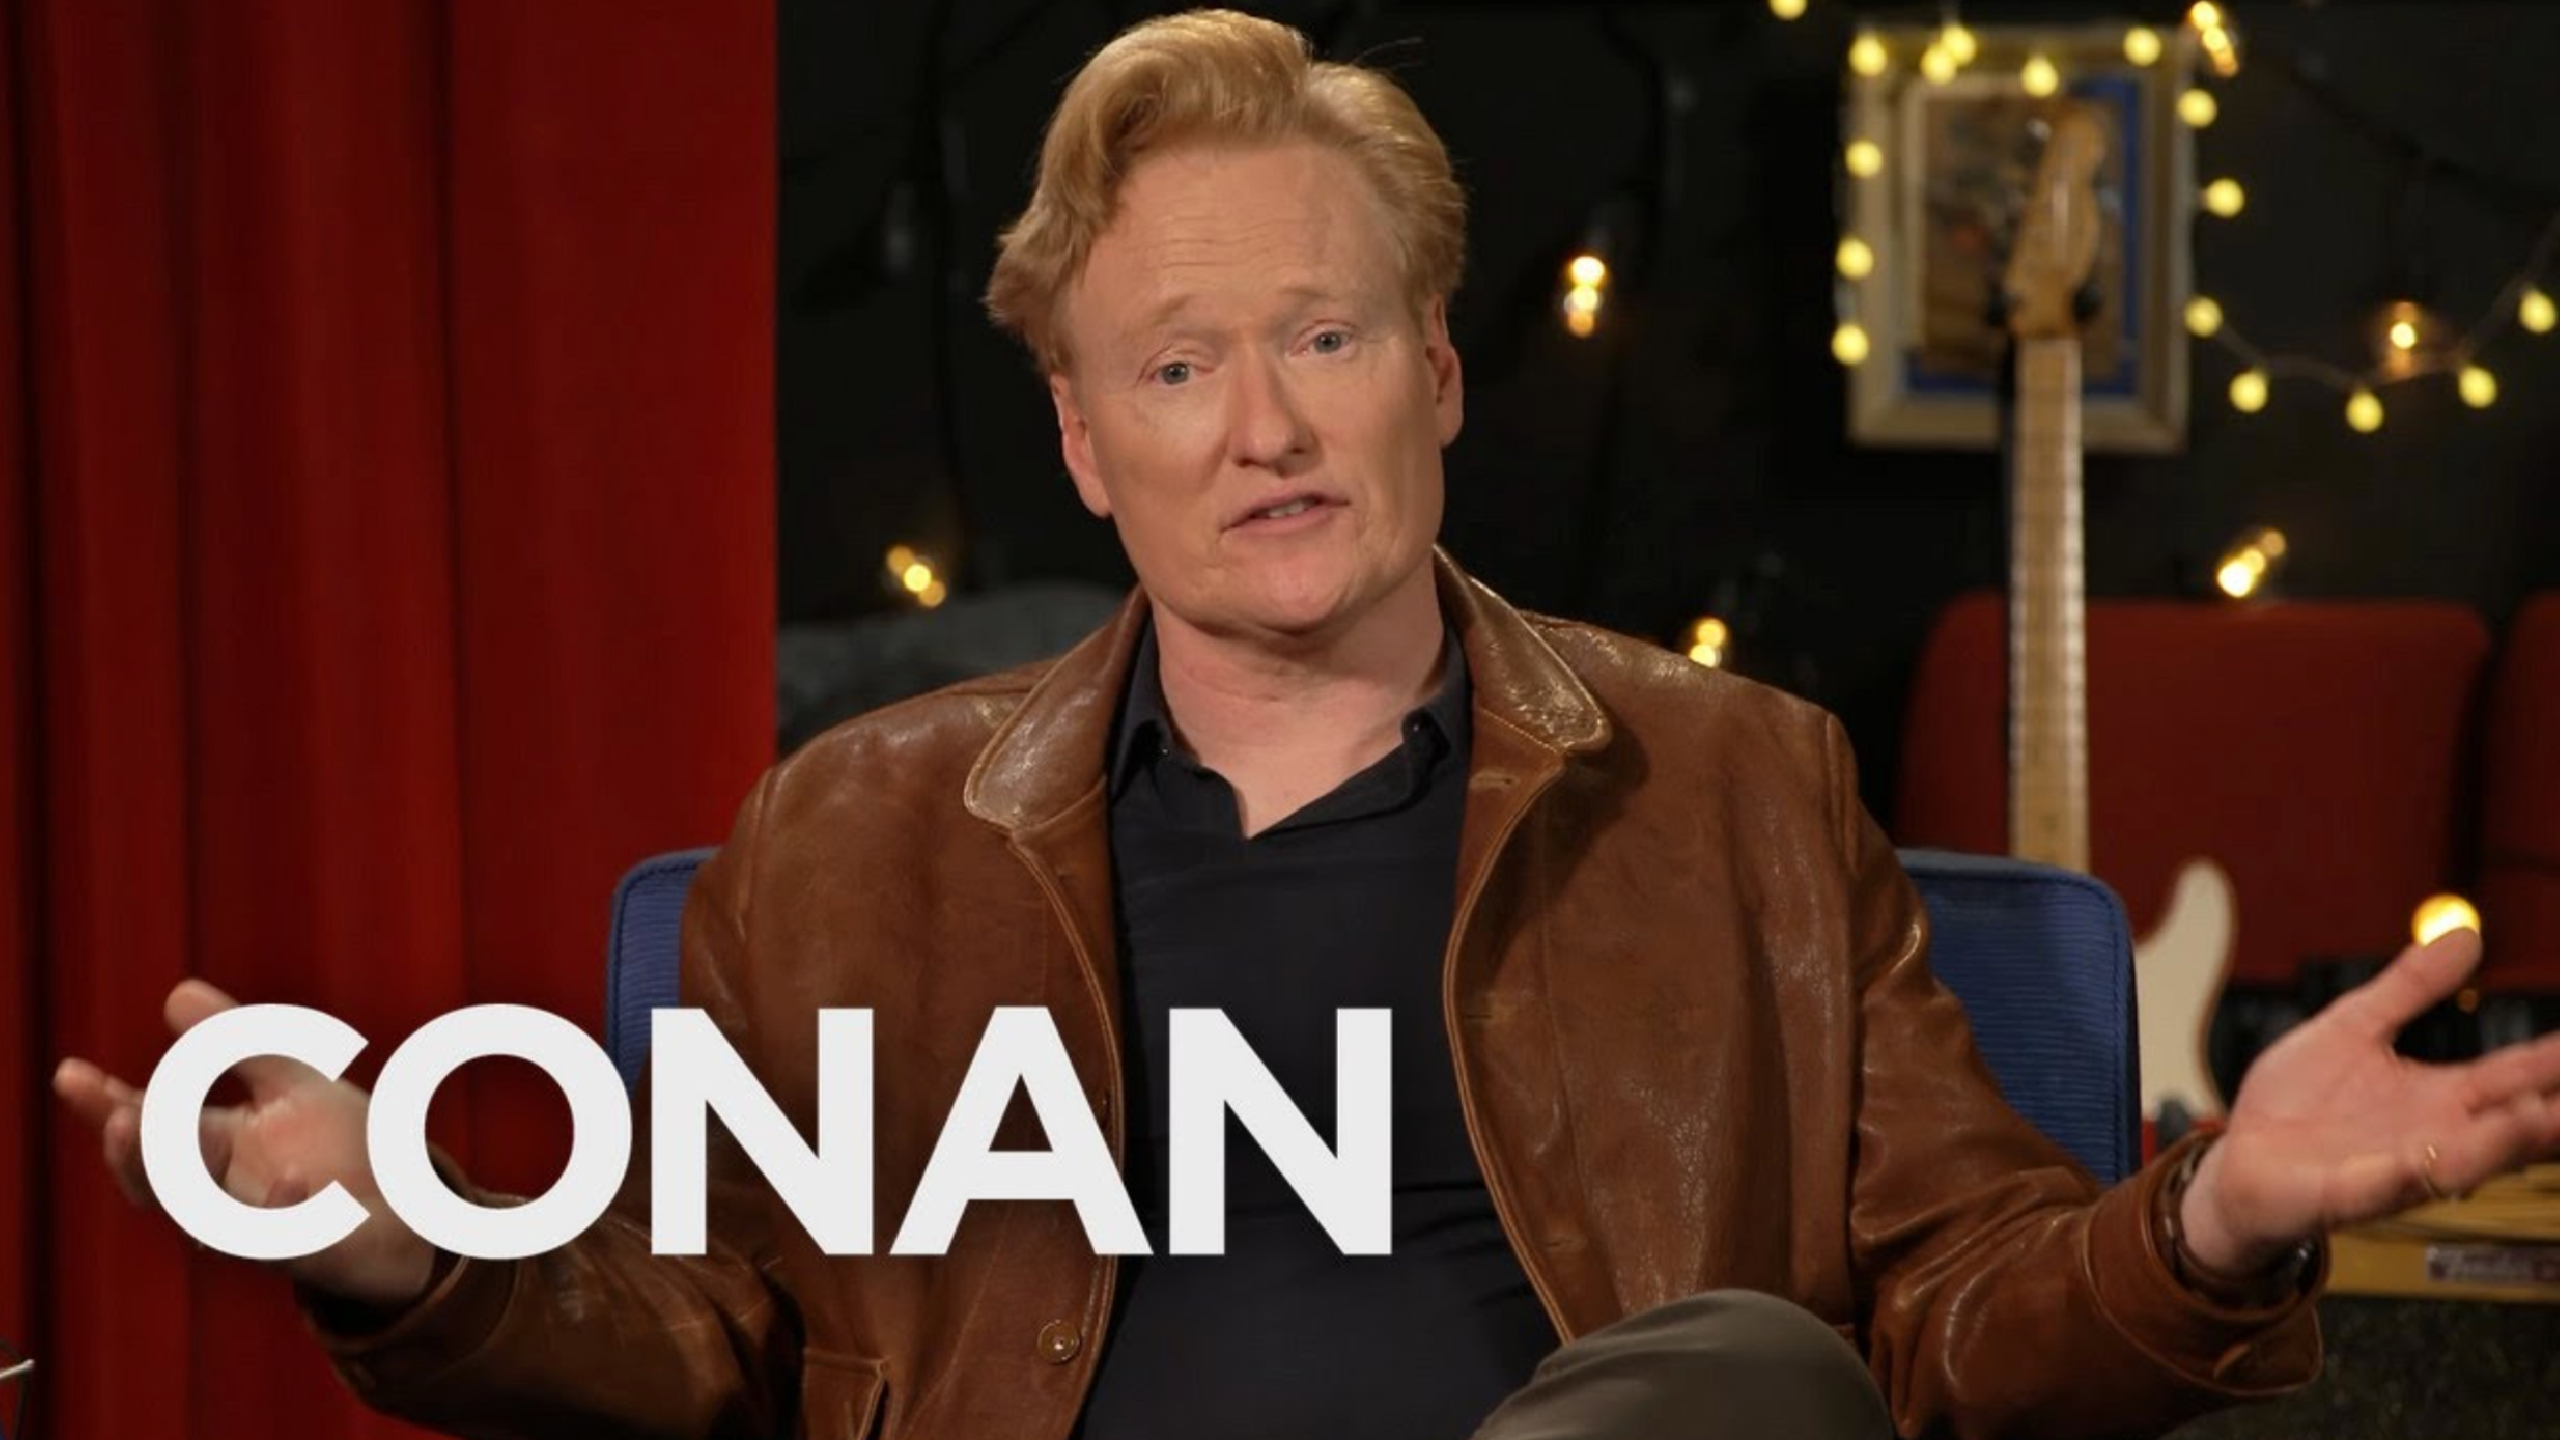 Conan Final Episode